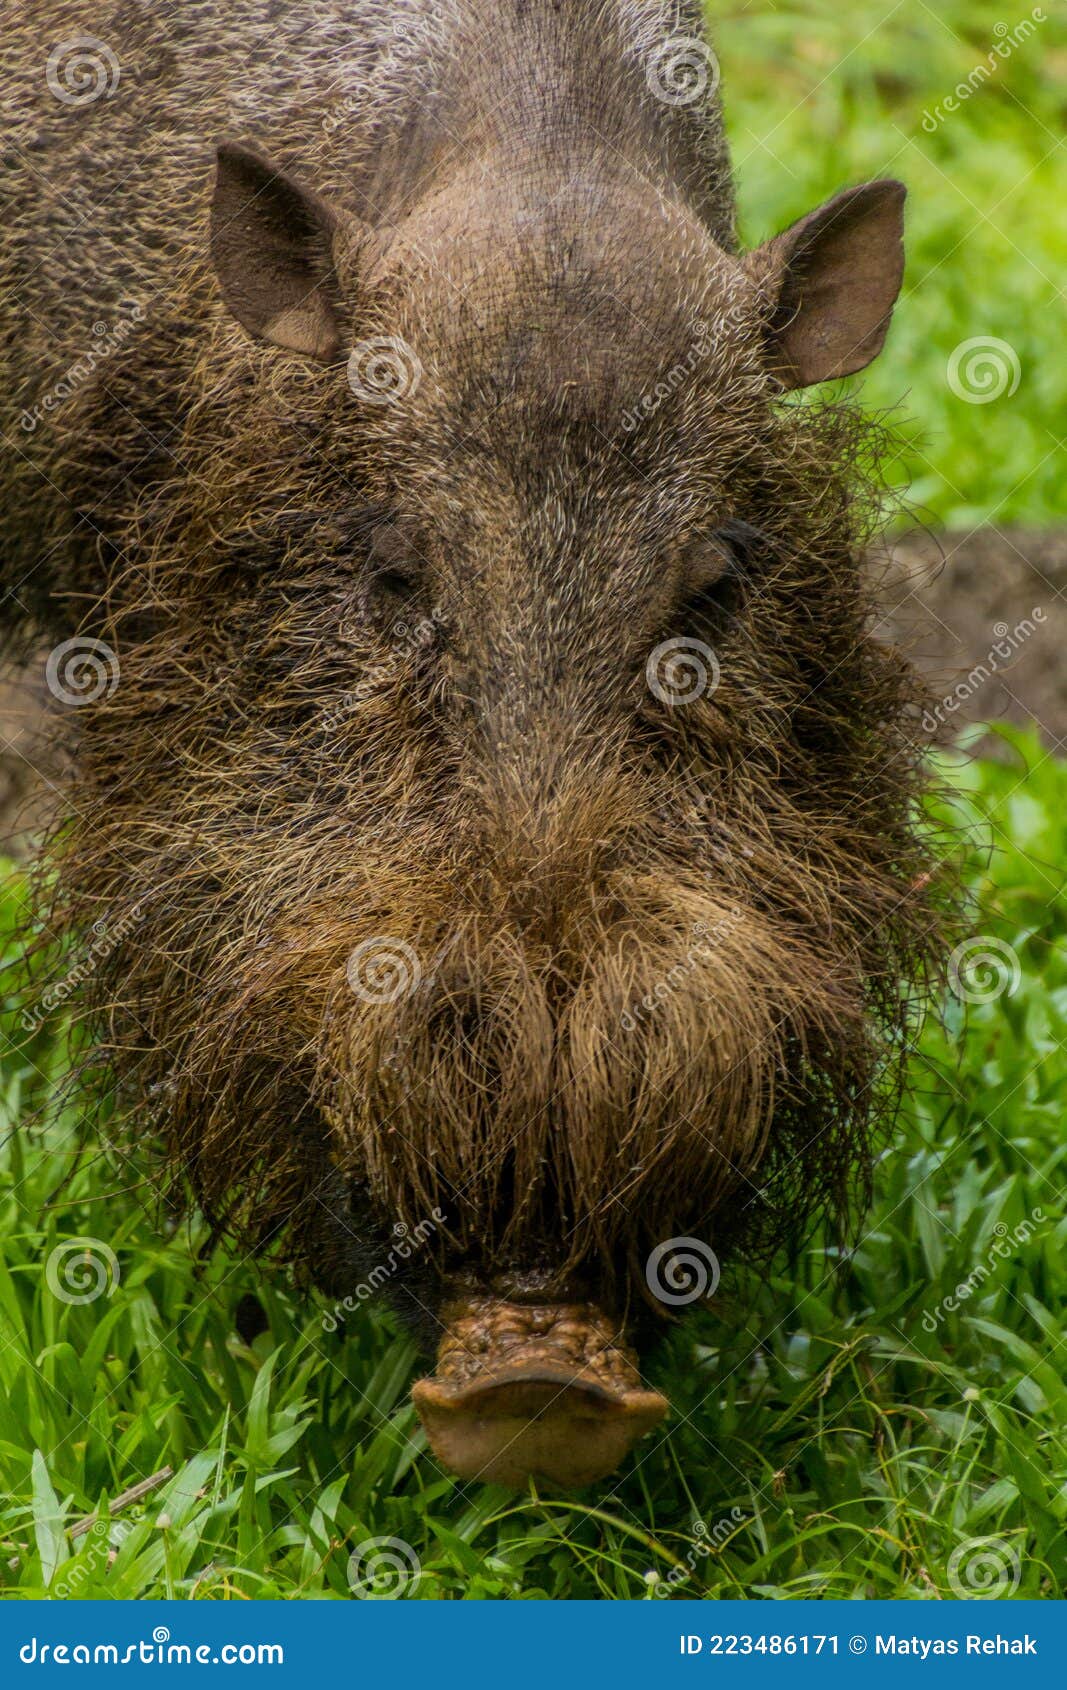 Питание и образ жизни бородатых свиней с острова Борнео